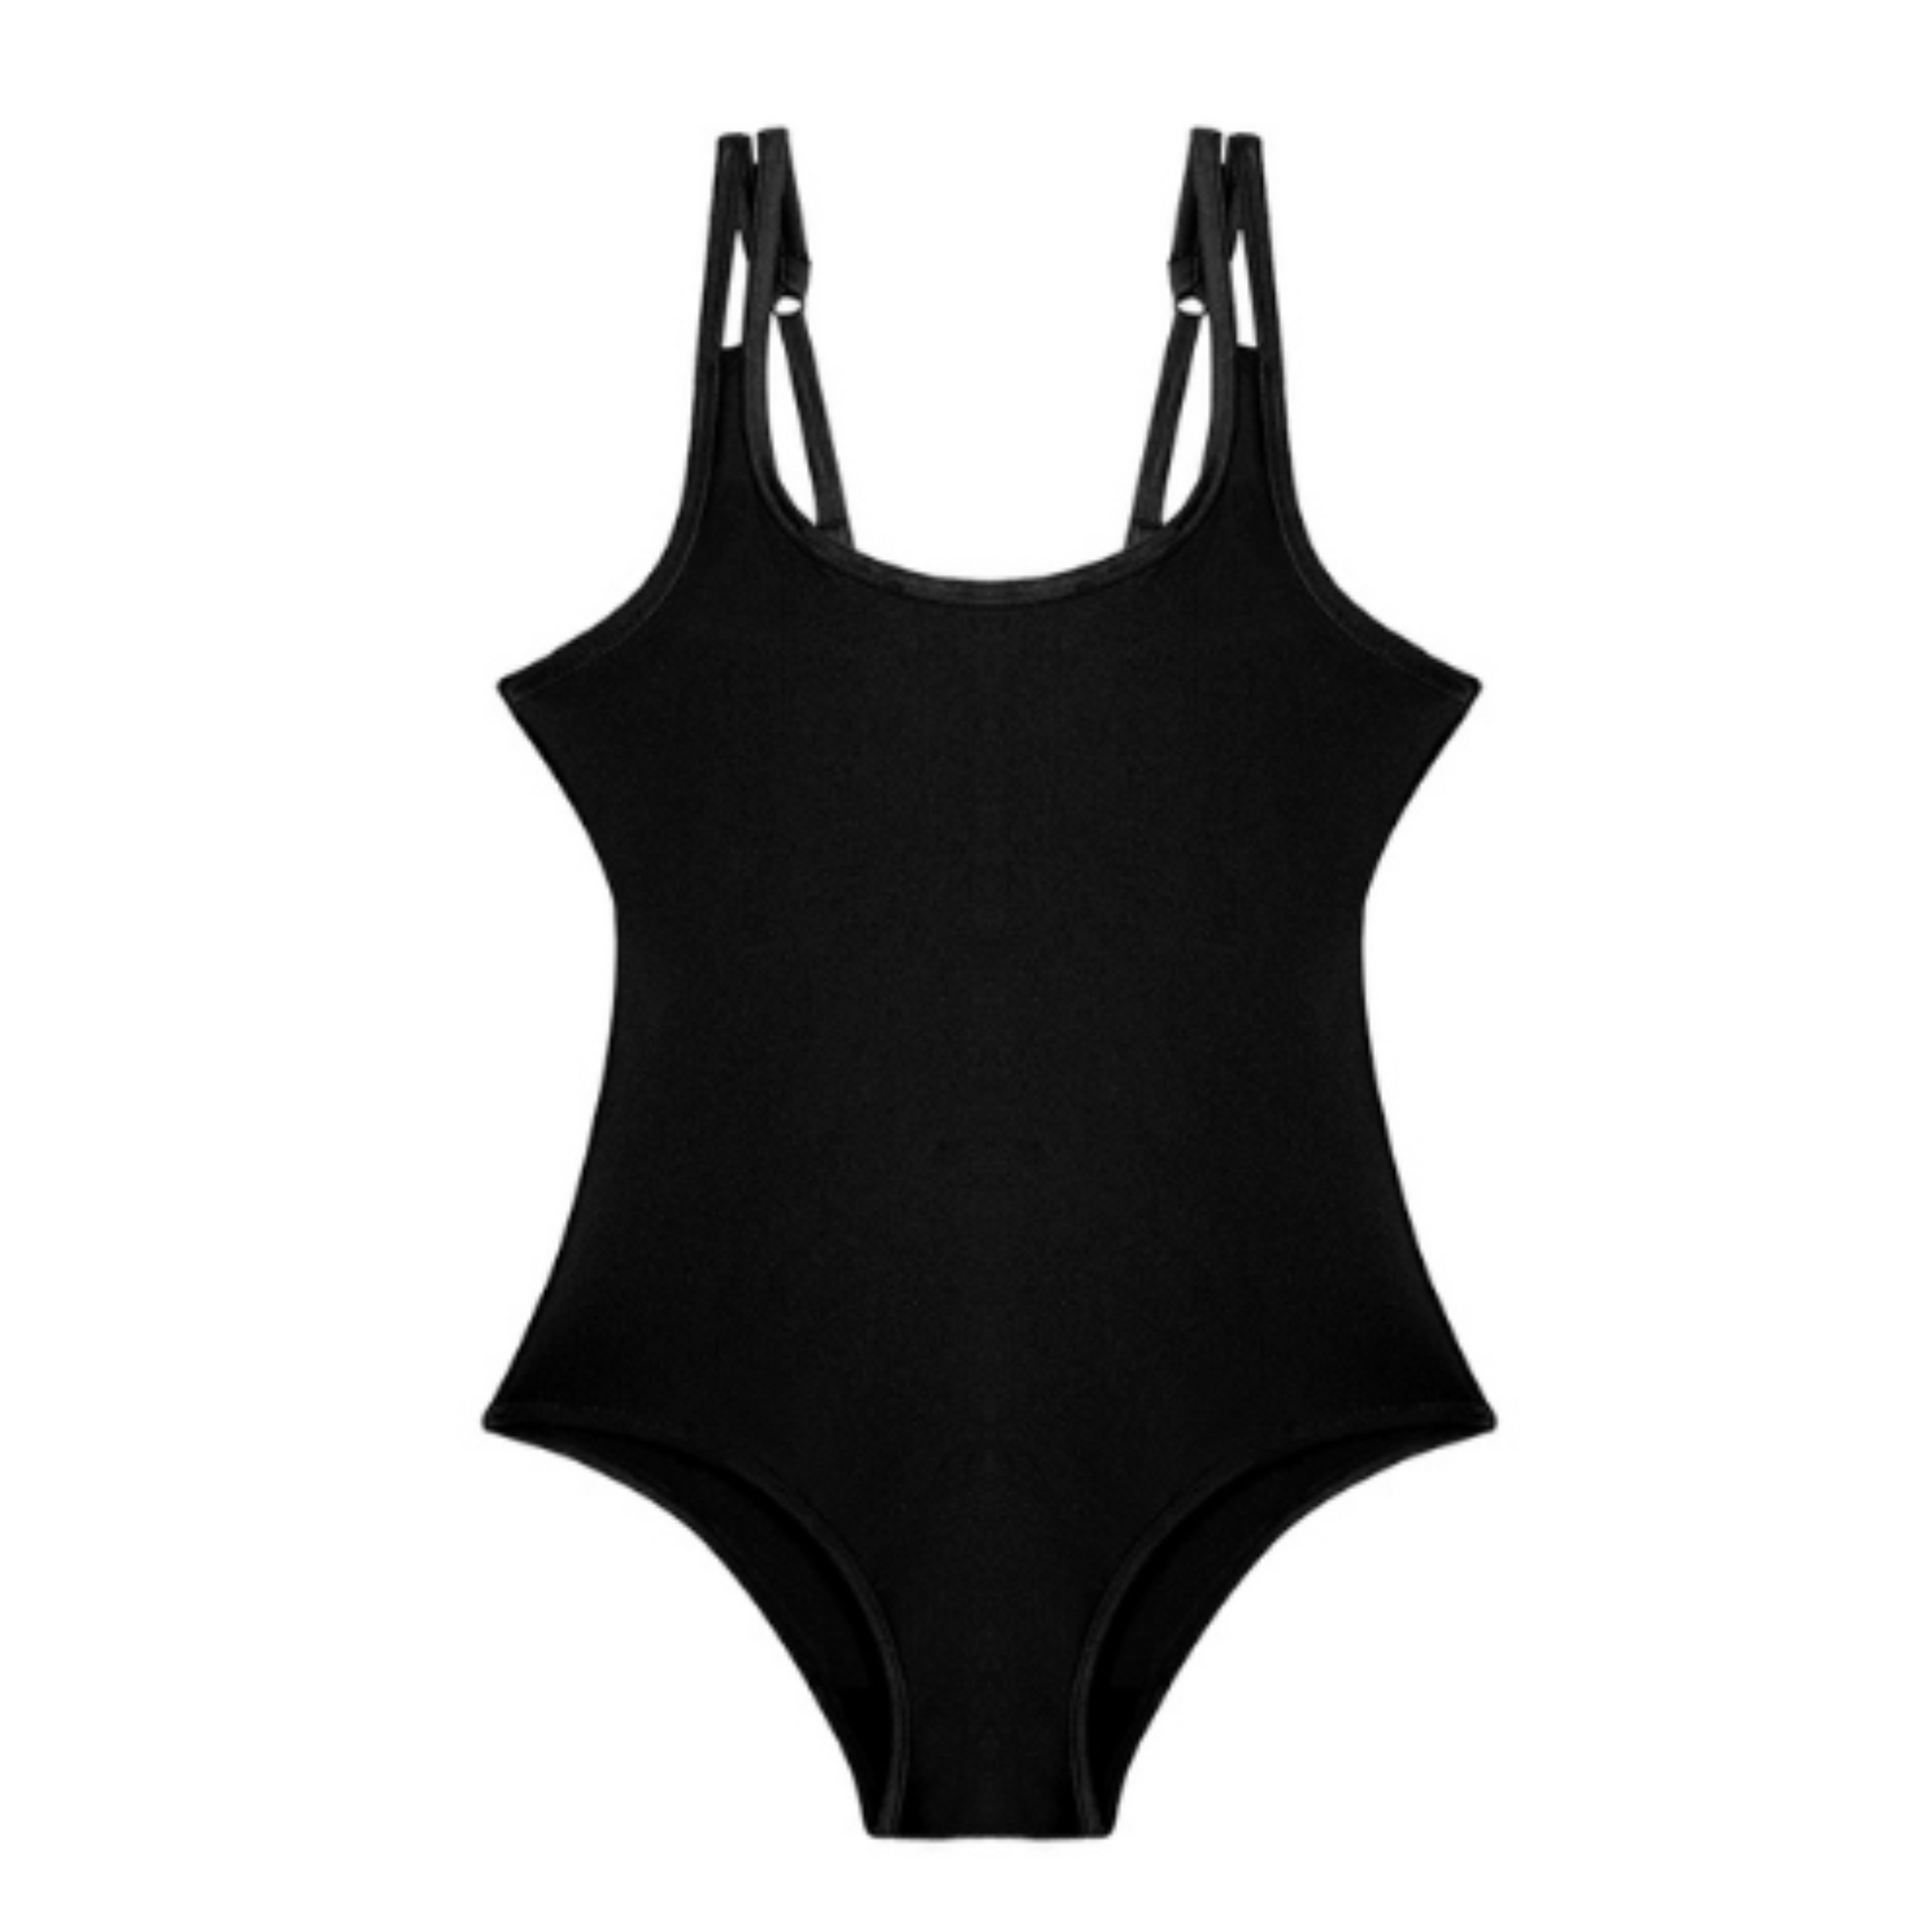 feitycom Period Swimwear - Menstrual Swimsuit - One Piece